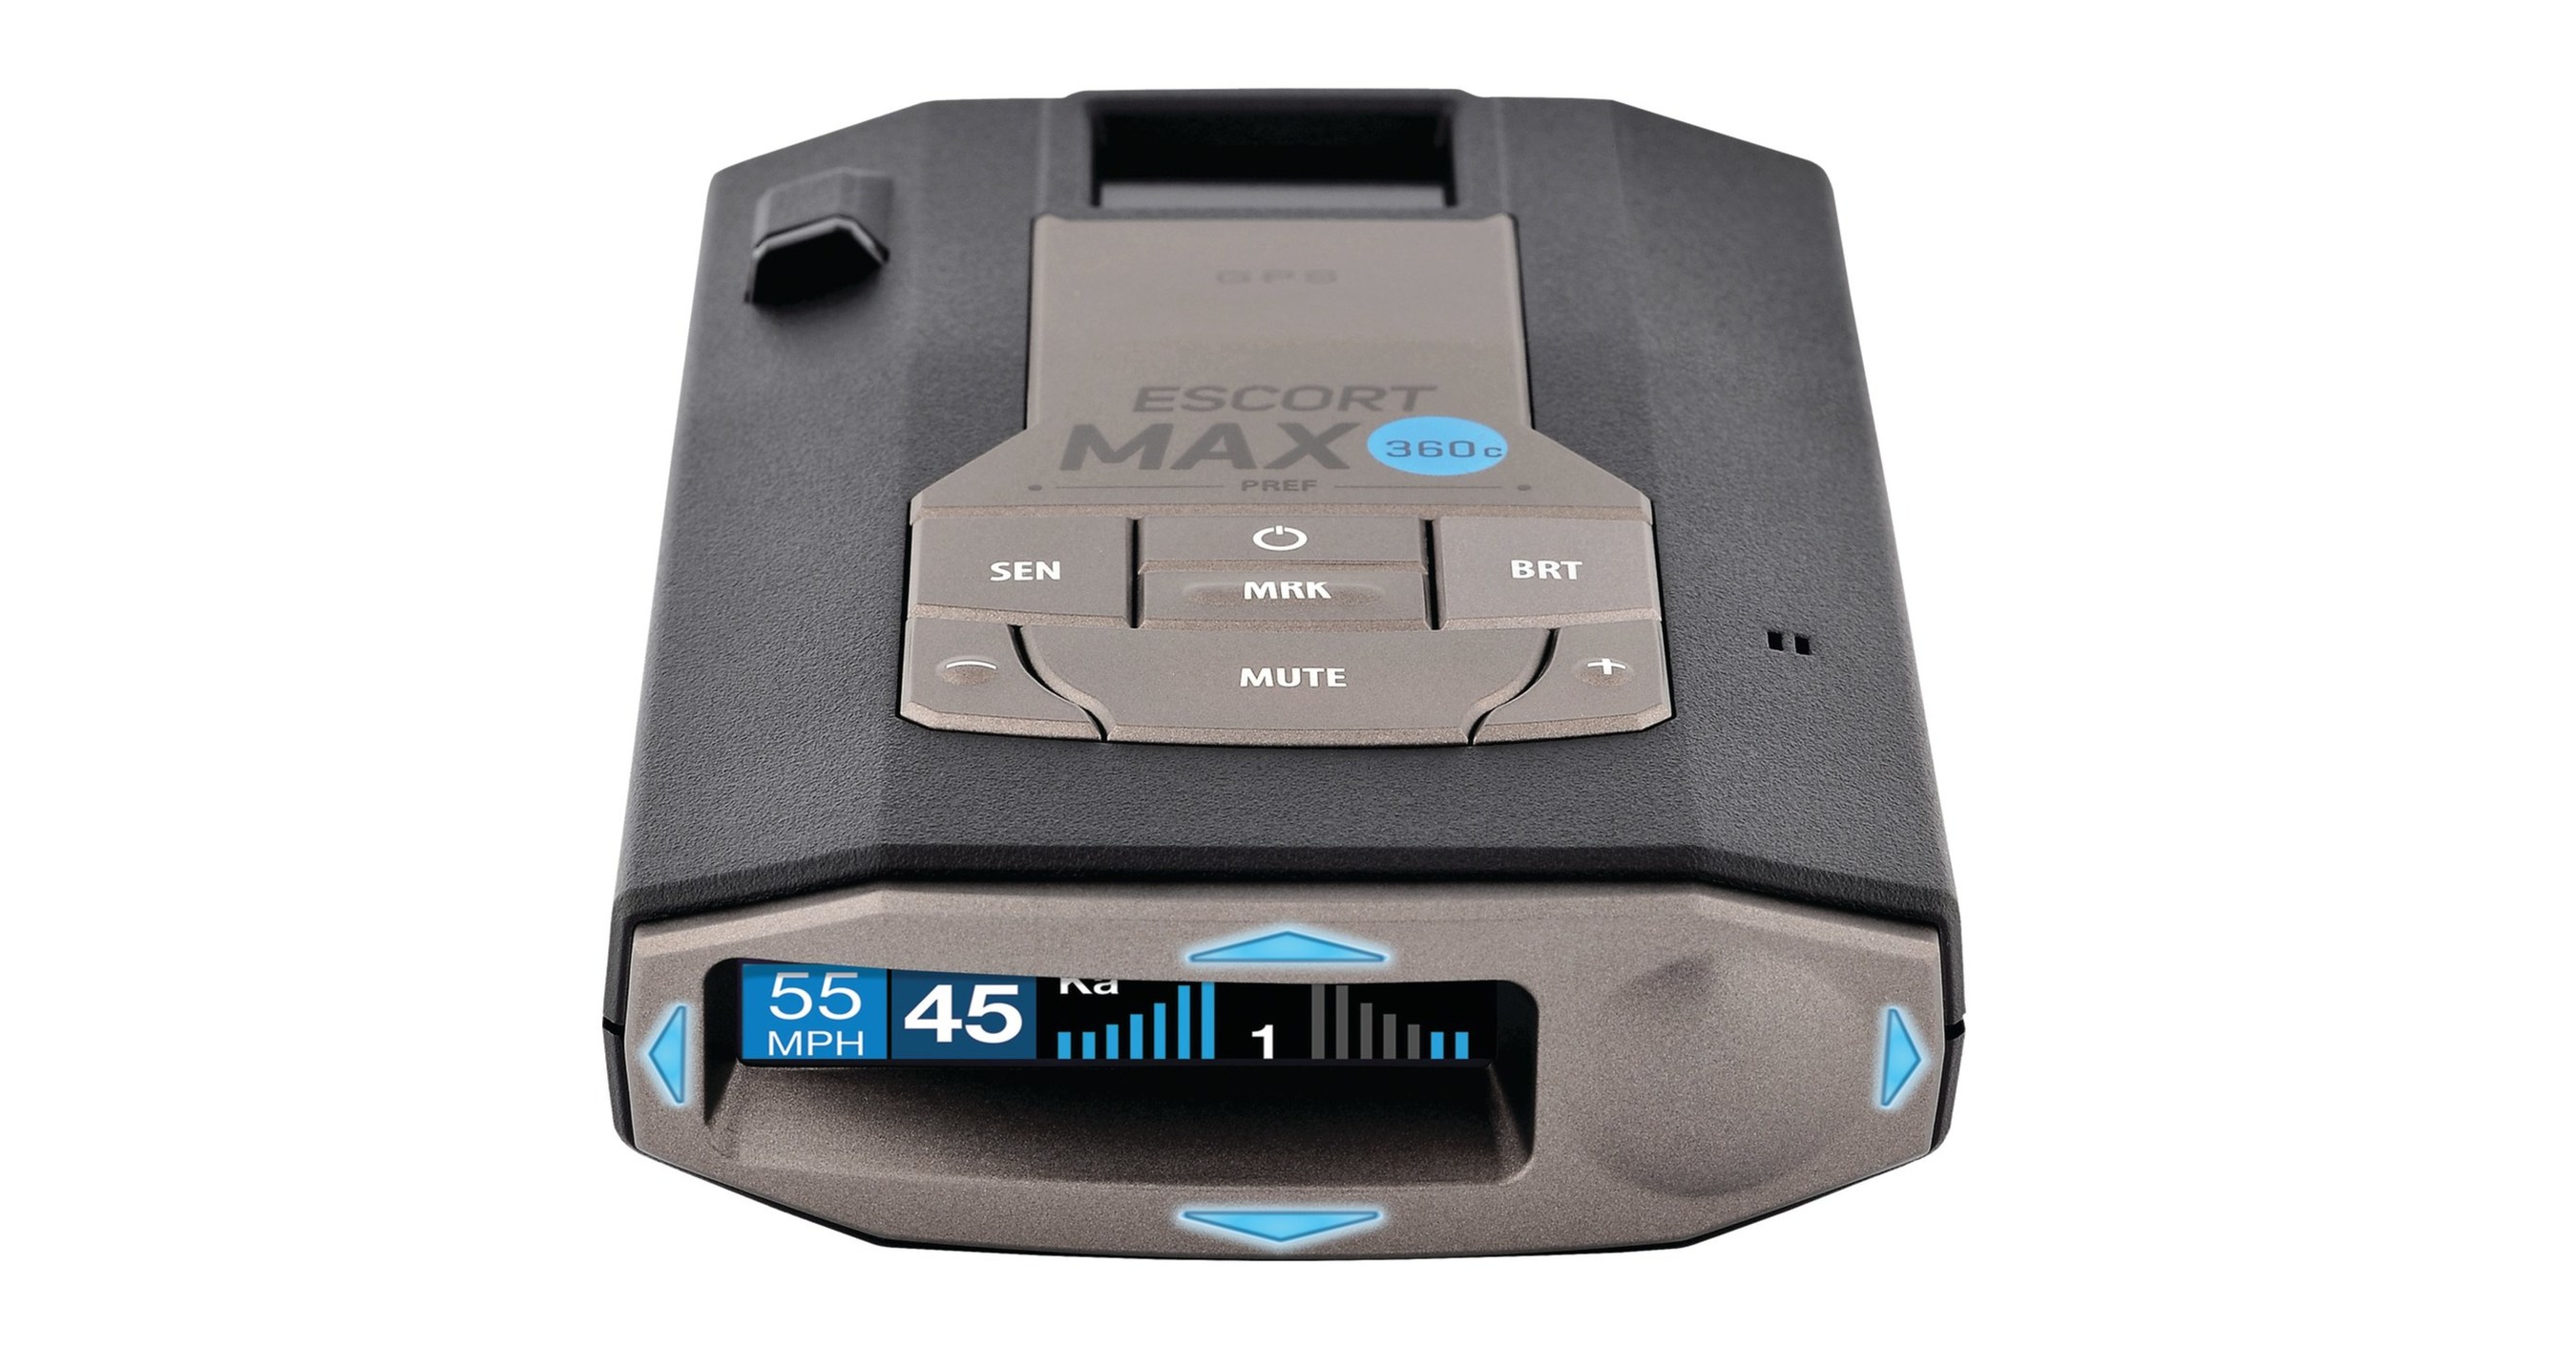  Escort MAX360C Laser Radar Detector - WiFi and